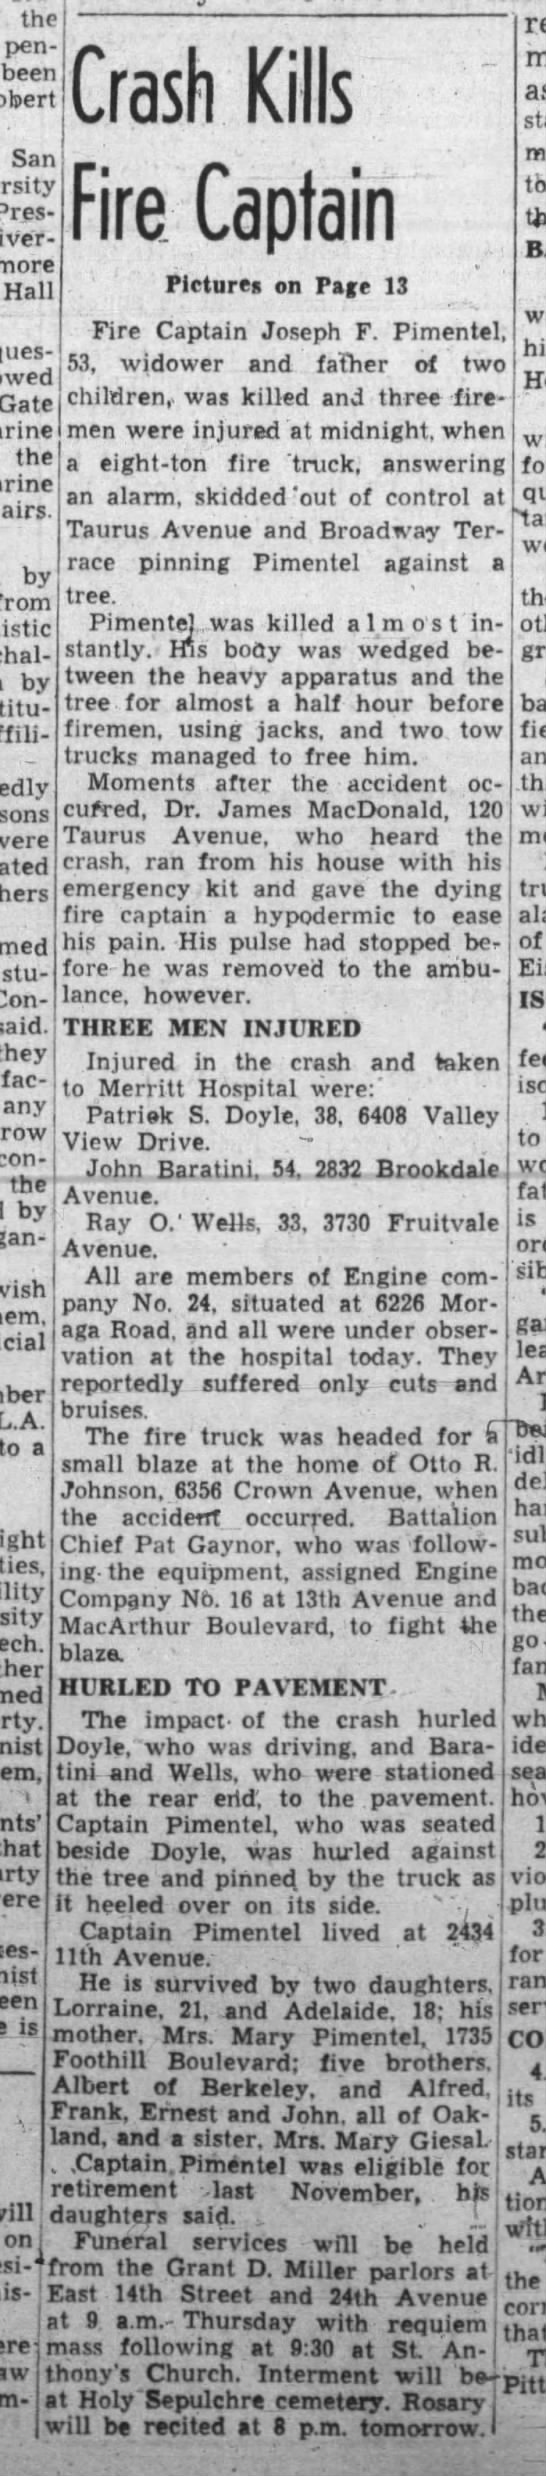 Crash Kills Fire Captain Pg 1 - Oakland Tribune January 22, 1946 - 